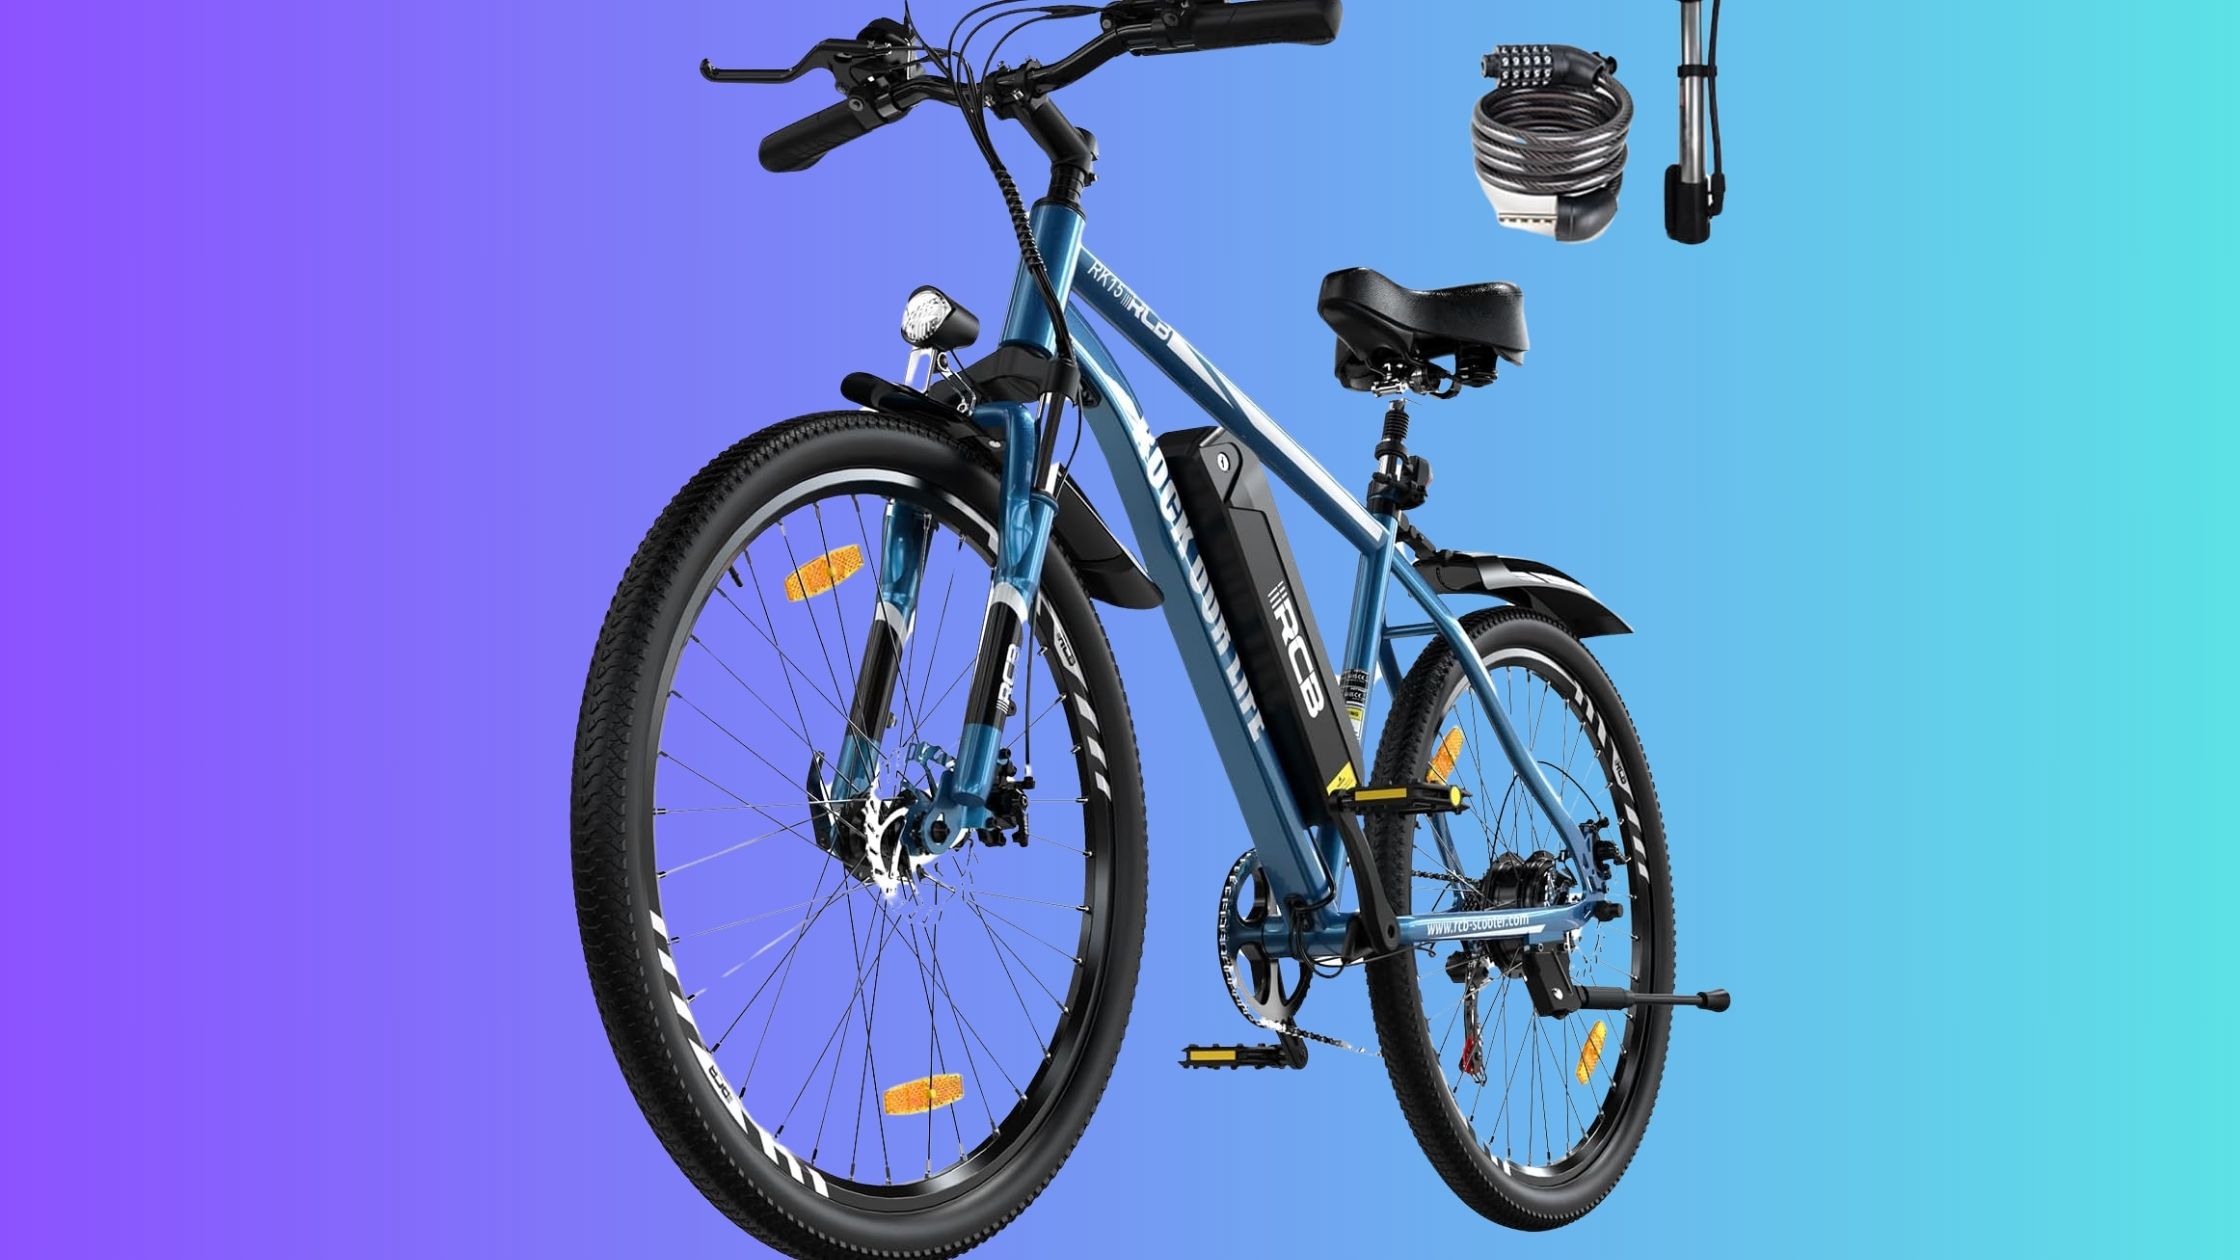 Soldes d'été : le vélo à assistance électrique RCB RK15 fait l'objet d'une belle promotion  © Amazon